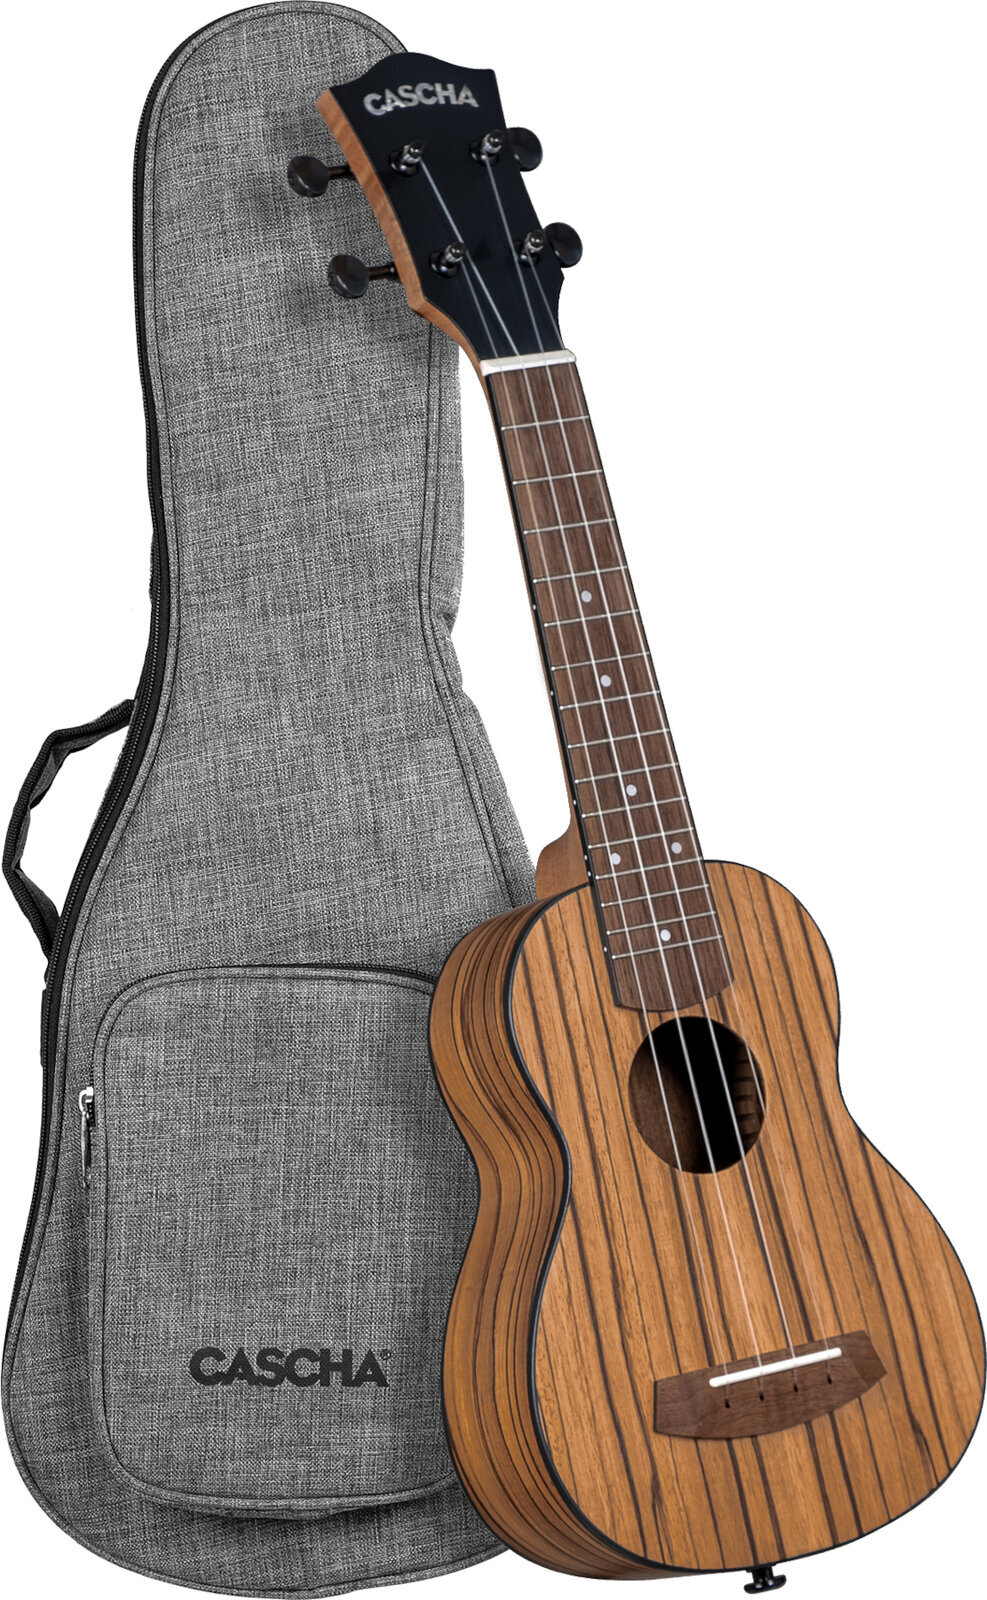 Szoprán ukulele Cascha Soprano Ukulele Zebra Wood Szoprán ukulele Natural